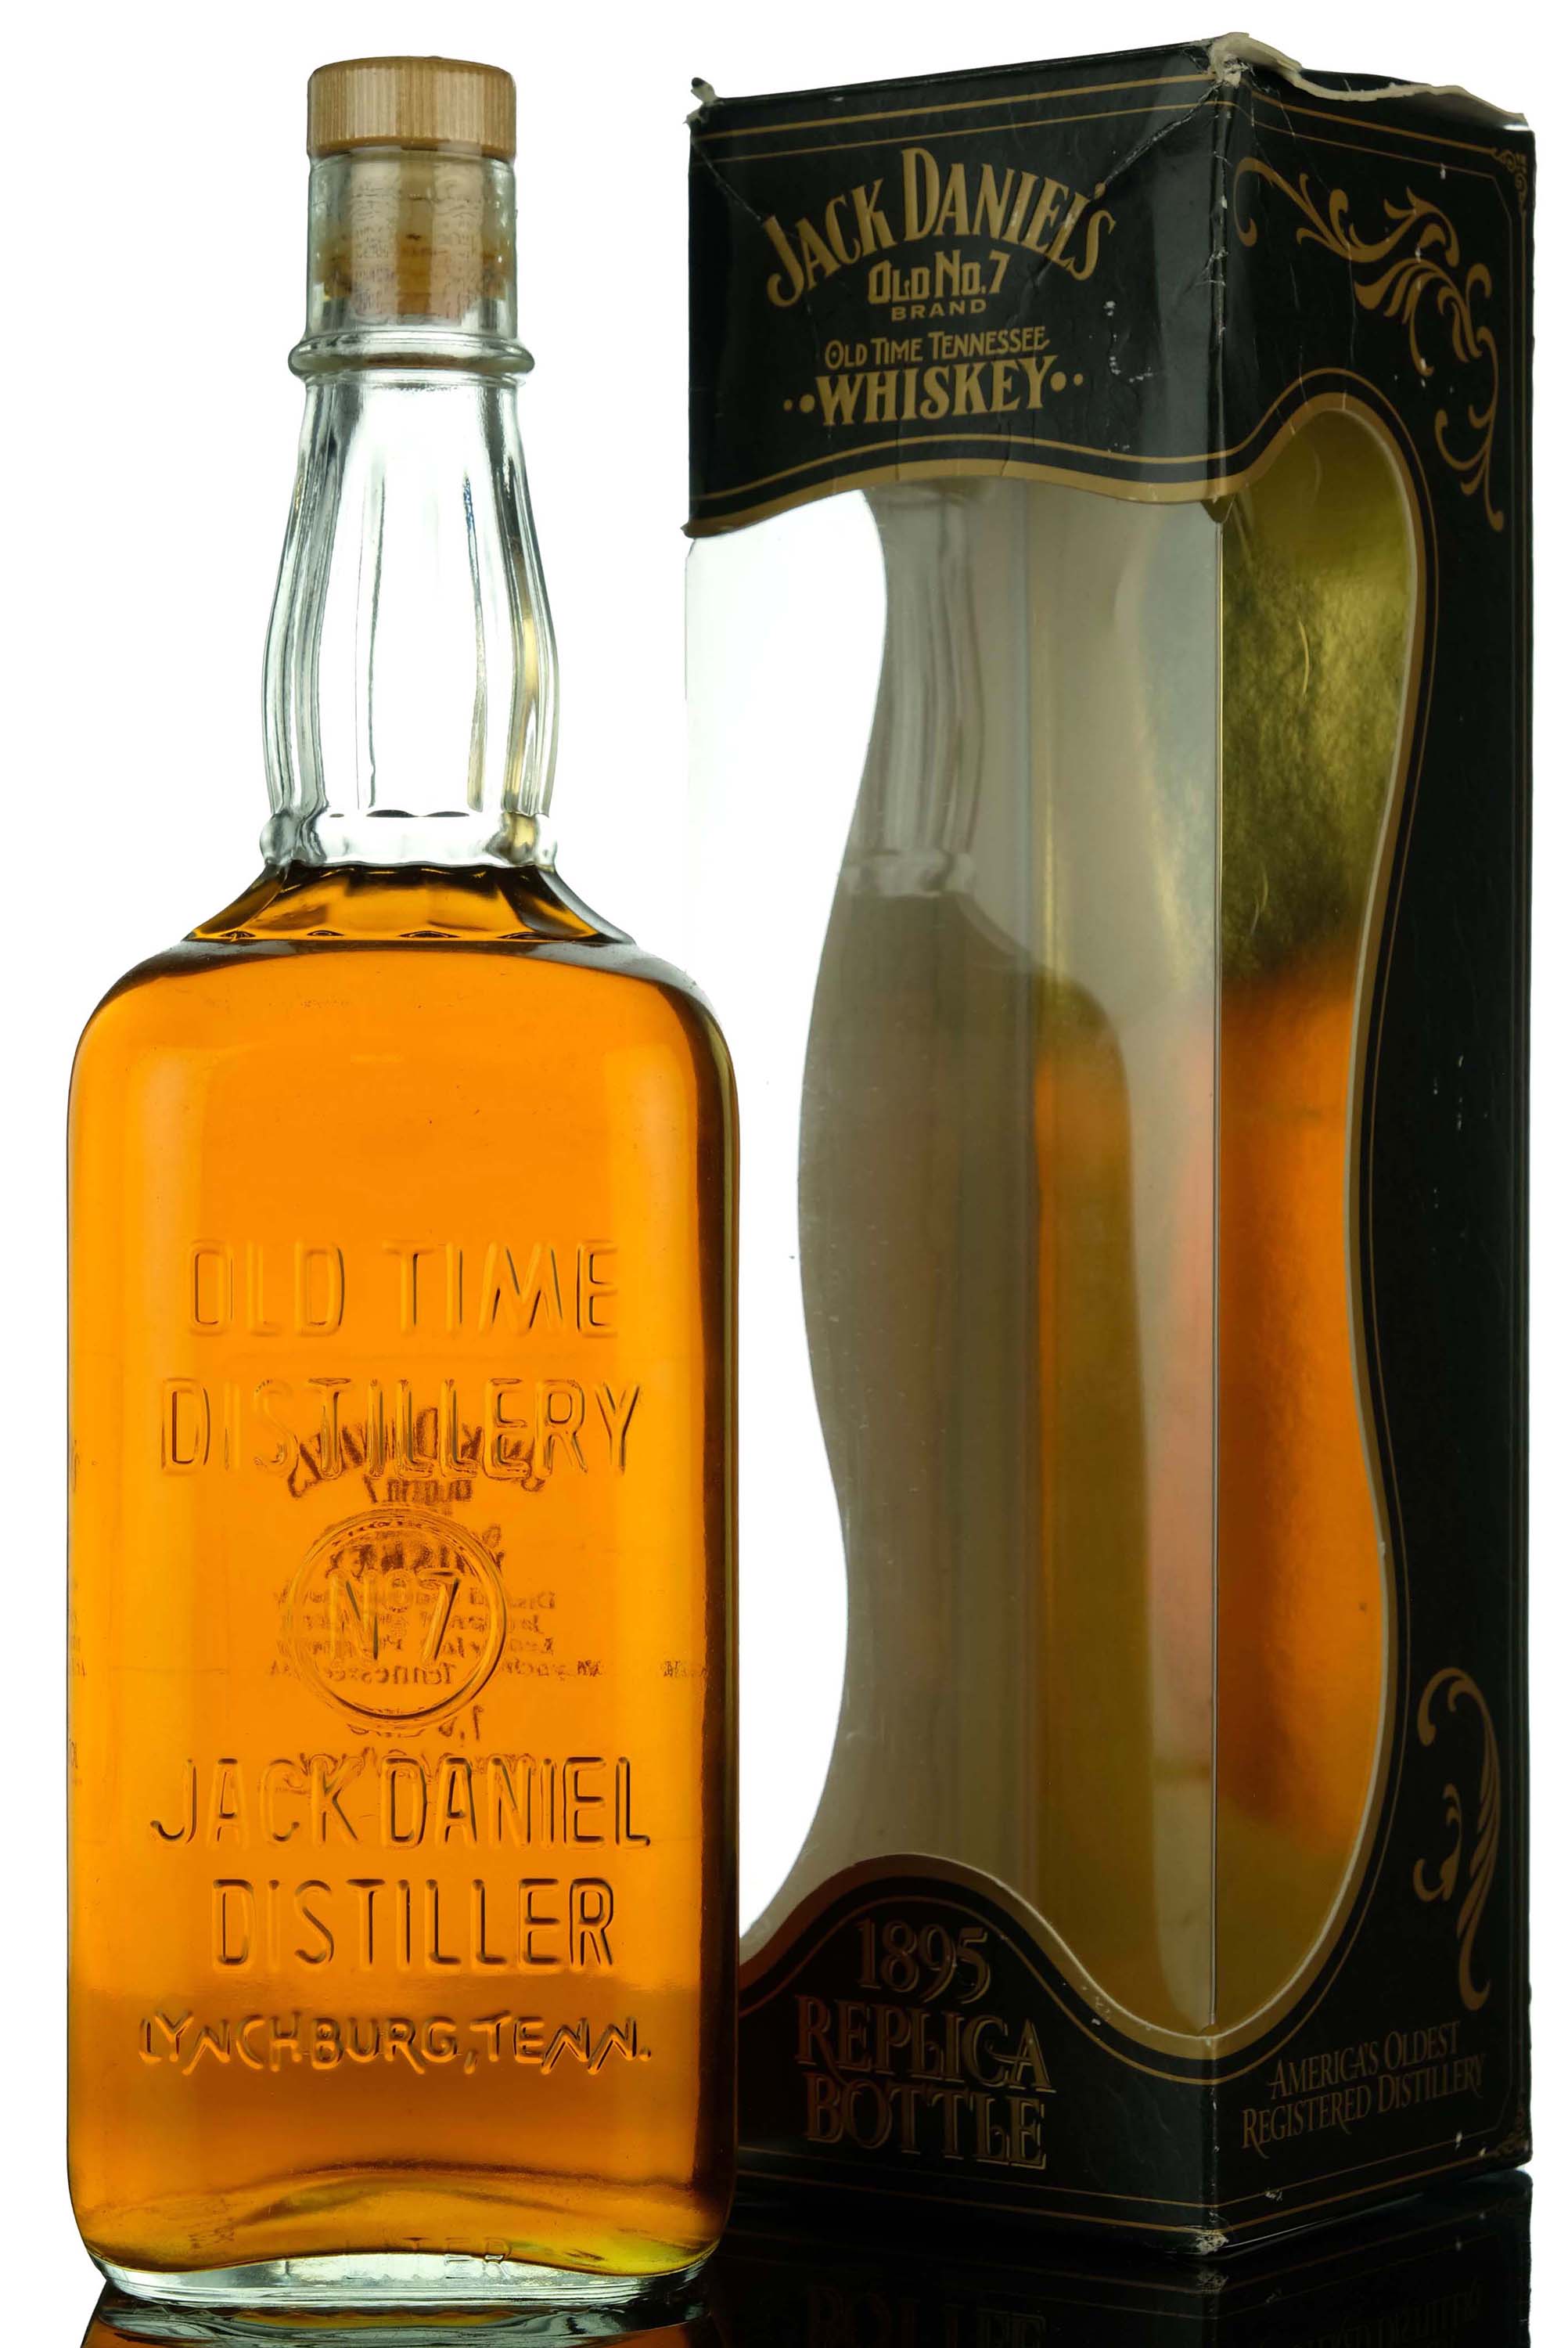 Jack Daniels 1895 Replica Bottle - 1 Litre